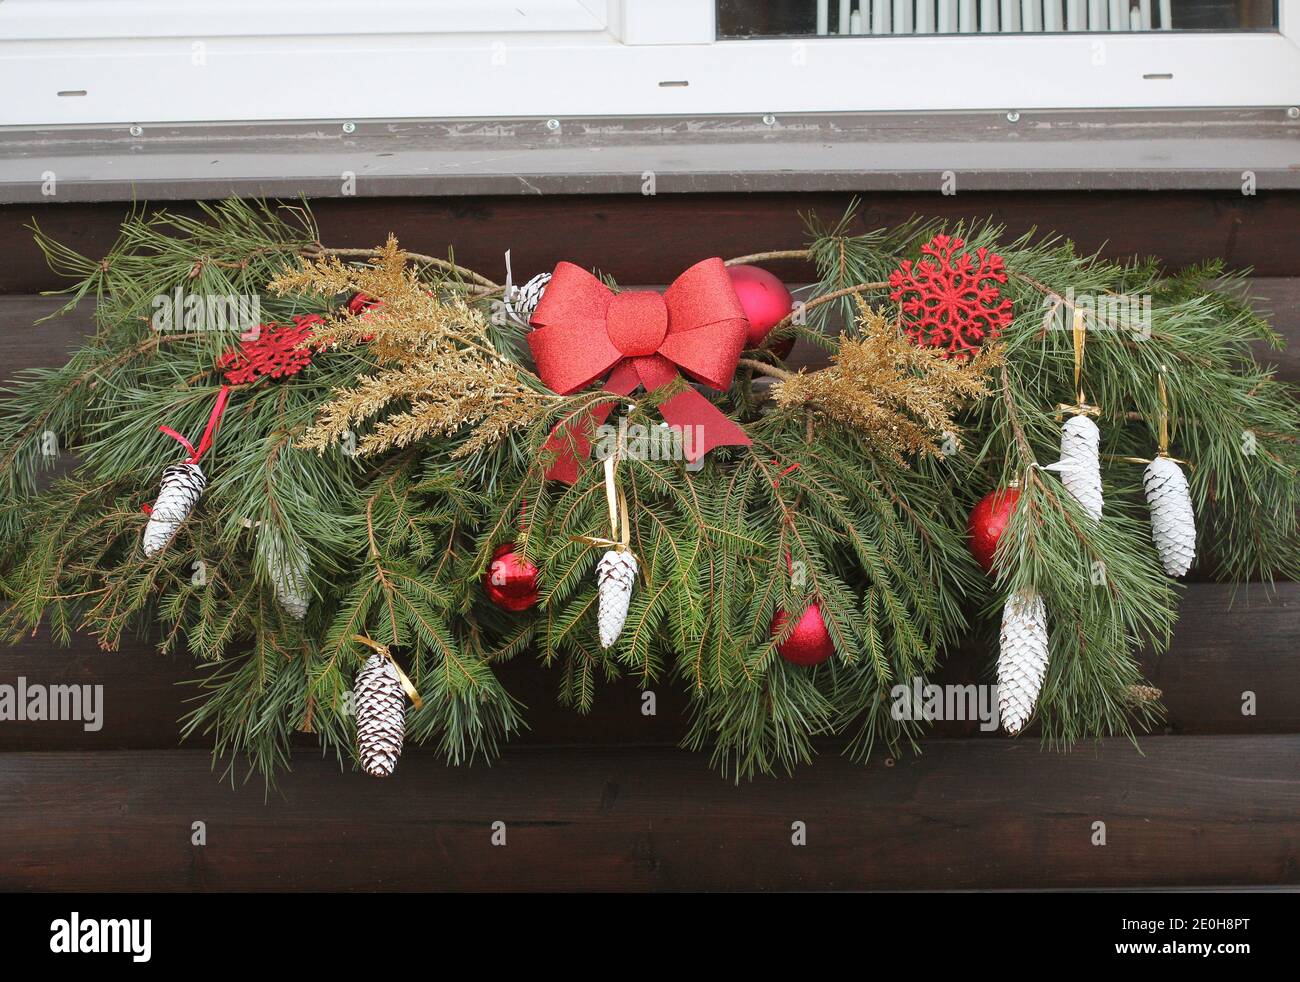 Décoration de fenêtre de Noël. Ancienne maison en brique. Boules rouges et branches vertes. Concept - Noël, nouvel an. Banque D'Images